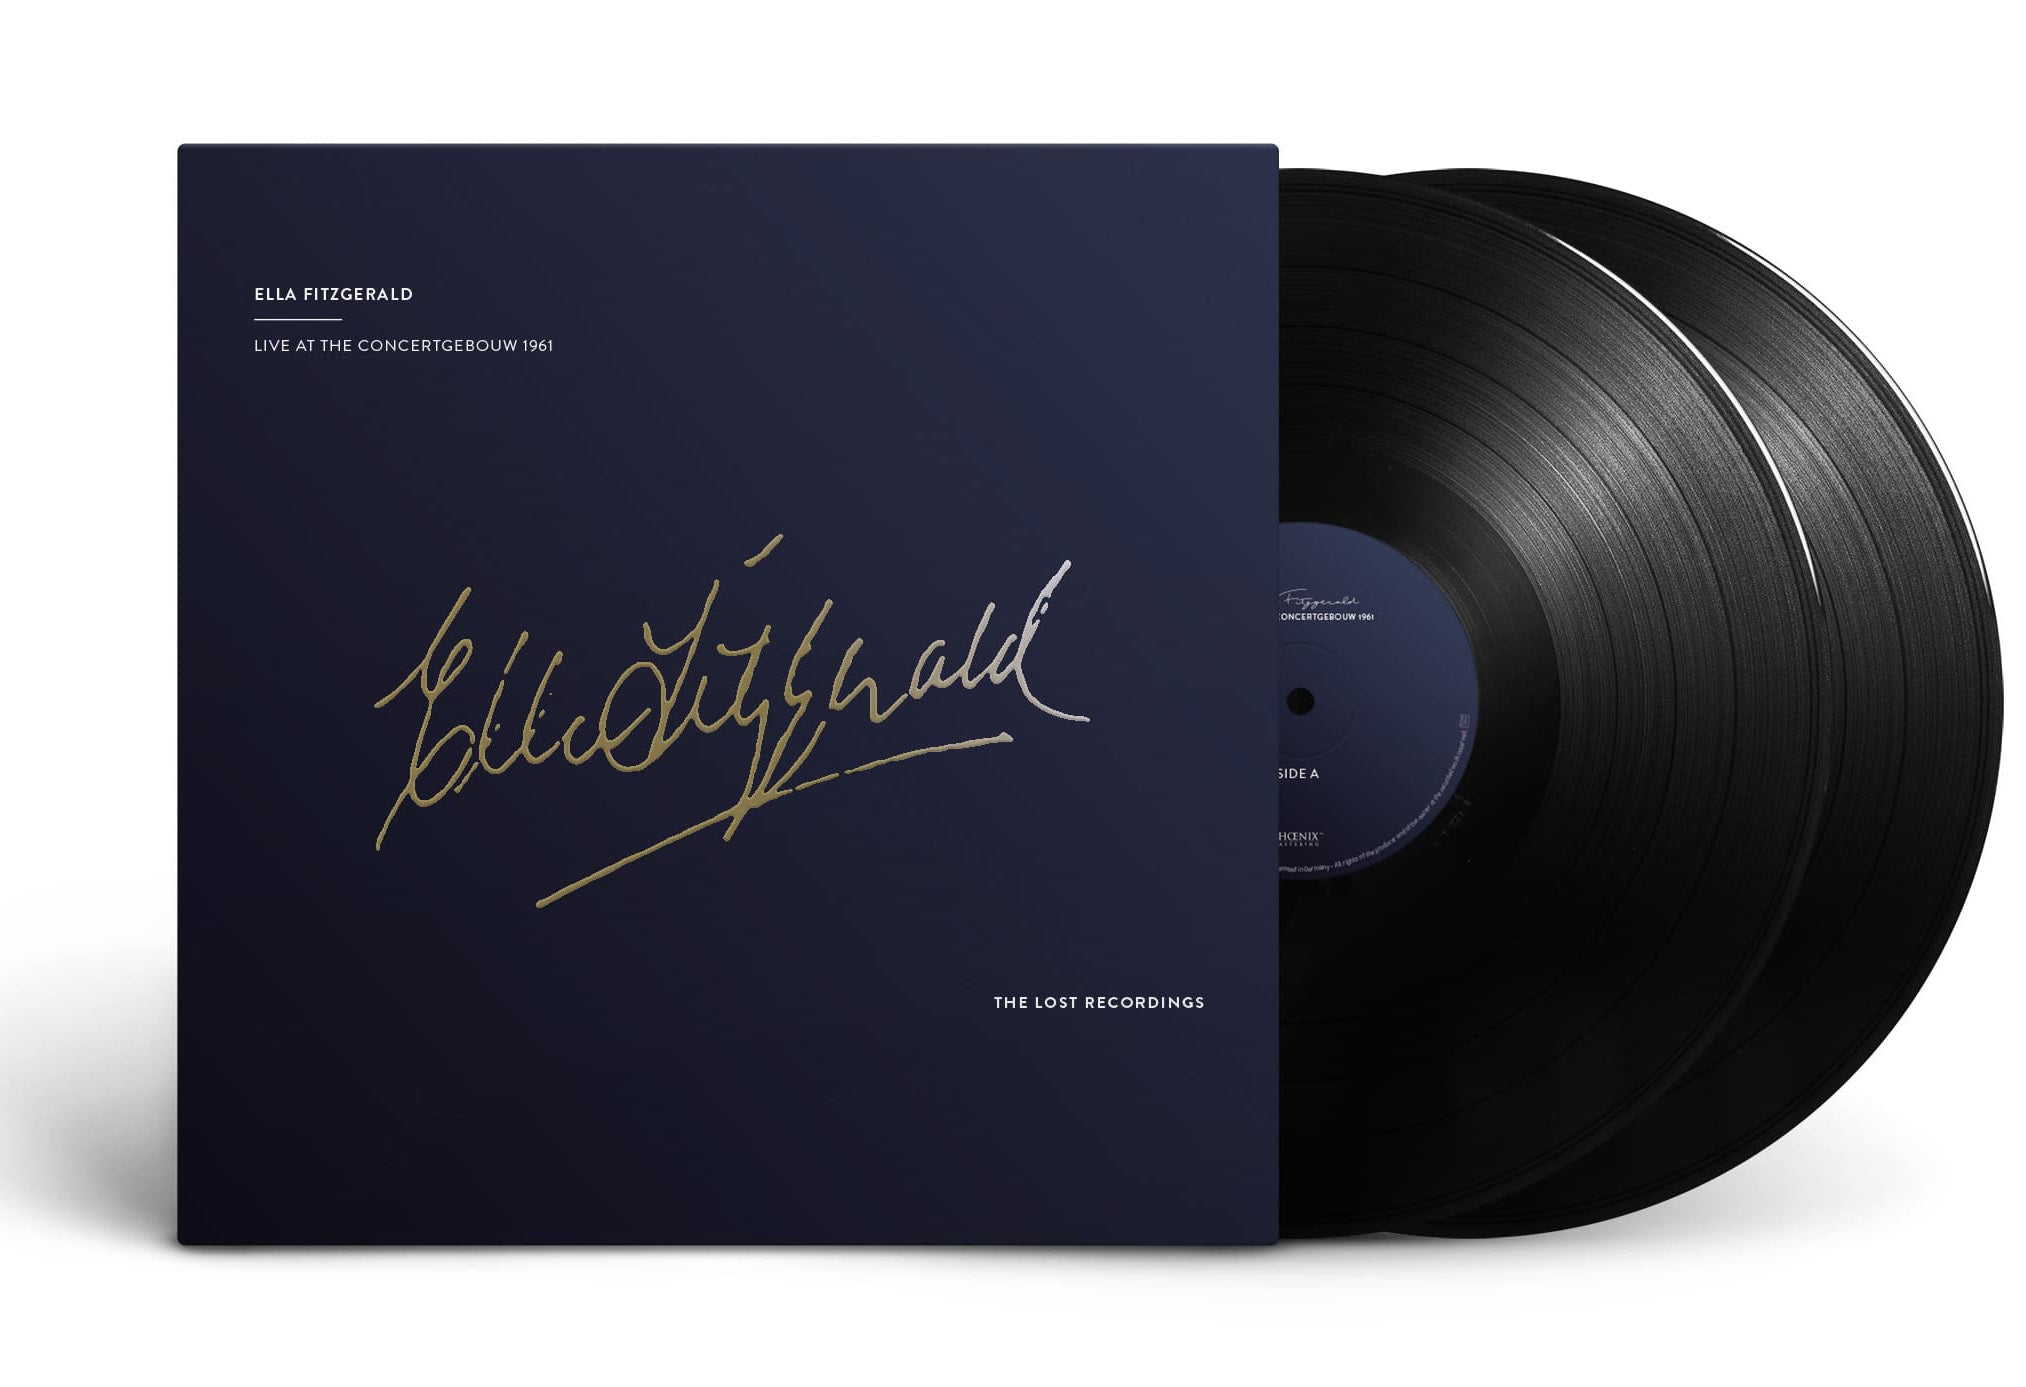 Ella Fitzgerald - Live at the Concertgebouw - 1961 - Double vinyl 